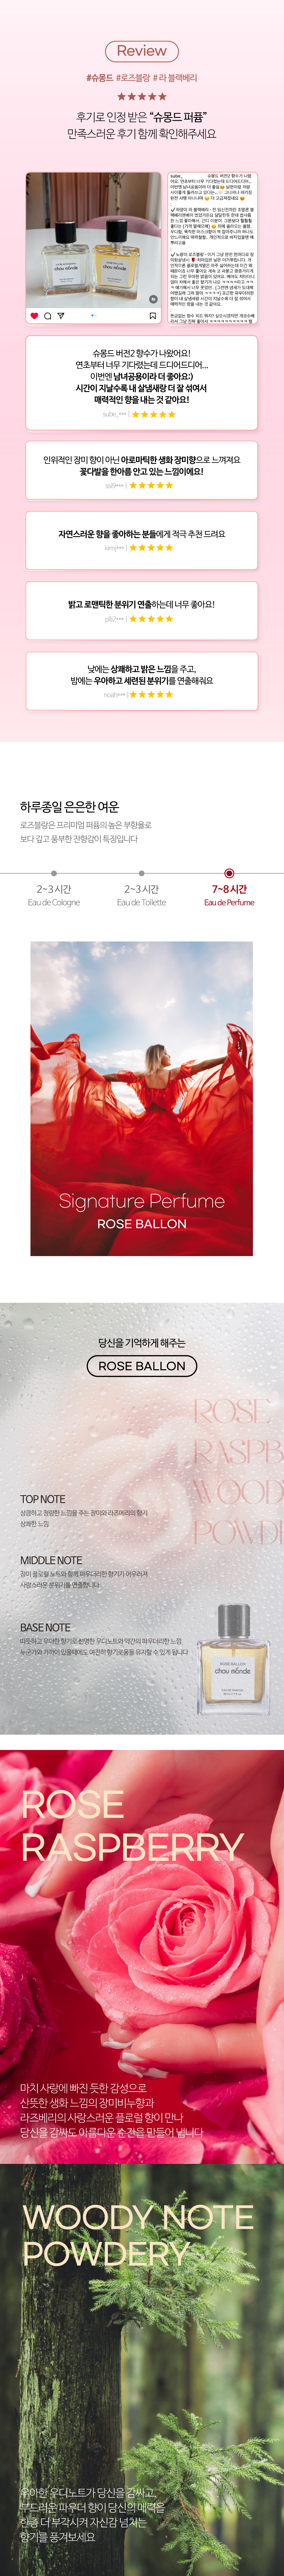 roseballon02_161432.jpg